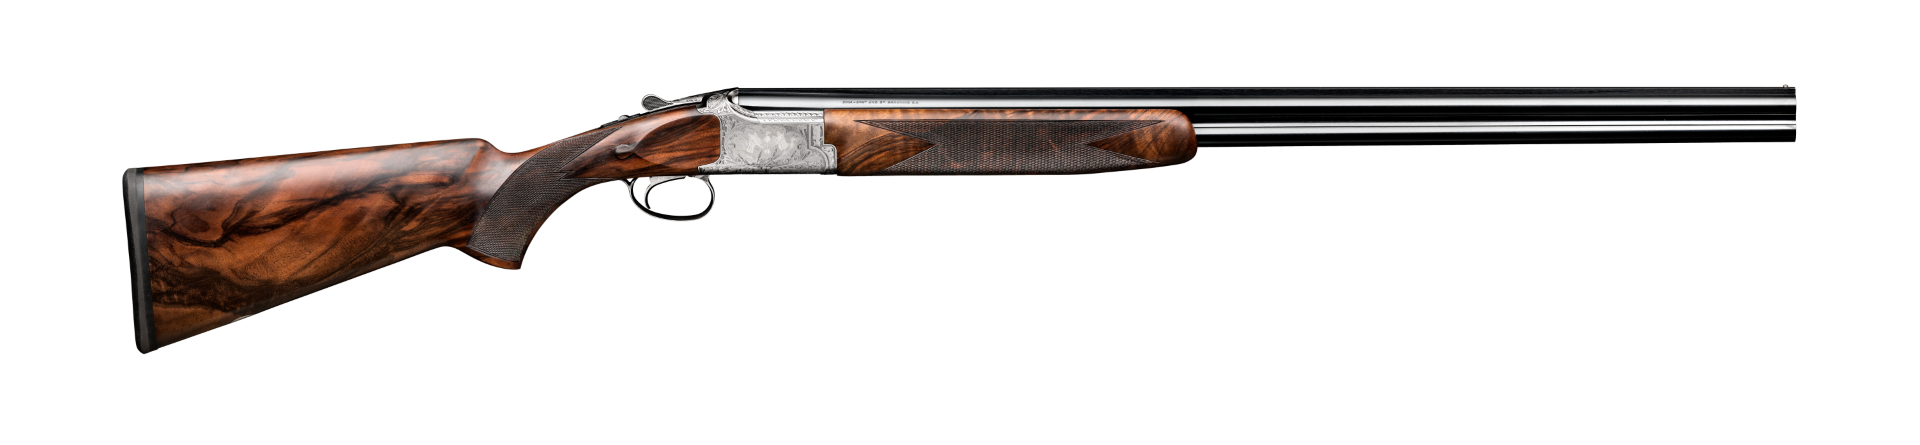 Browning shotgun